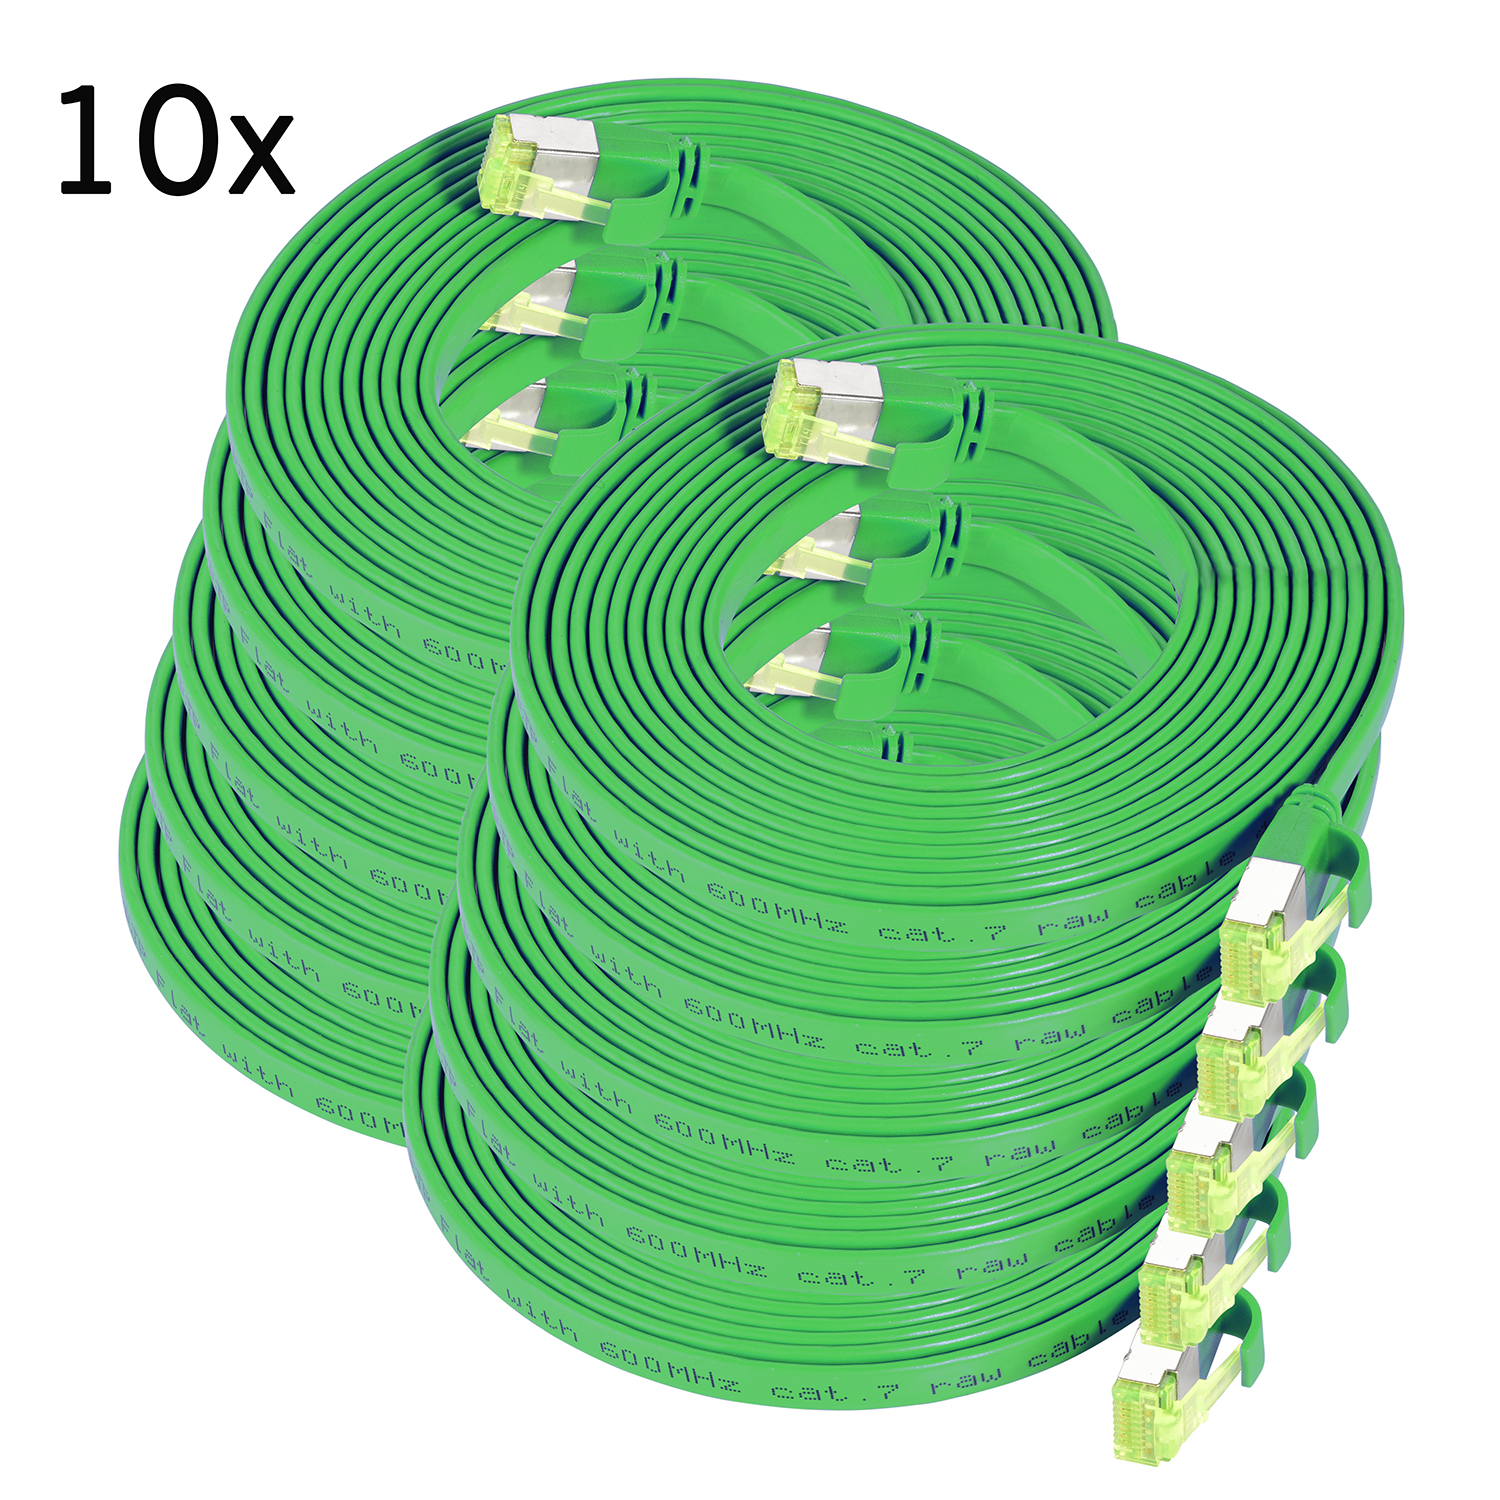 TPFNET 10er Pack Netzwerkkabel, Patchkabel grün, 3 Flachkabel 3m U/FTP m 10 / GBit